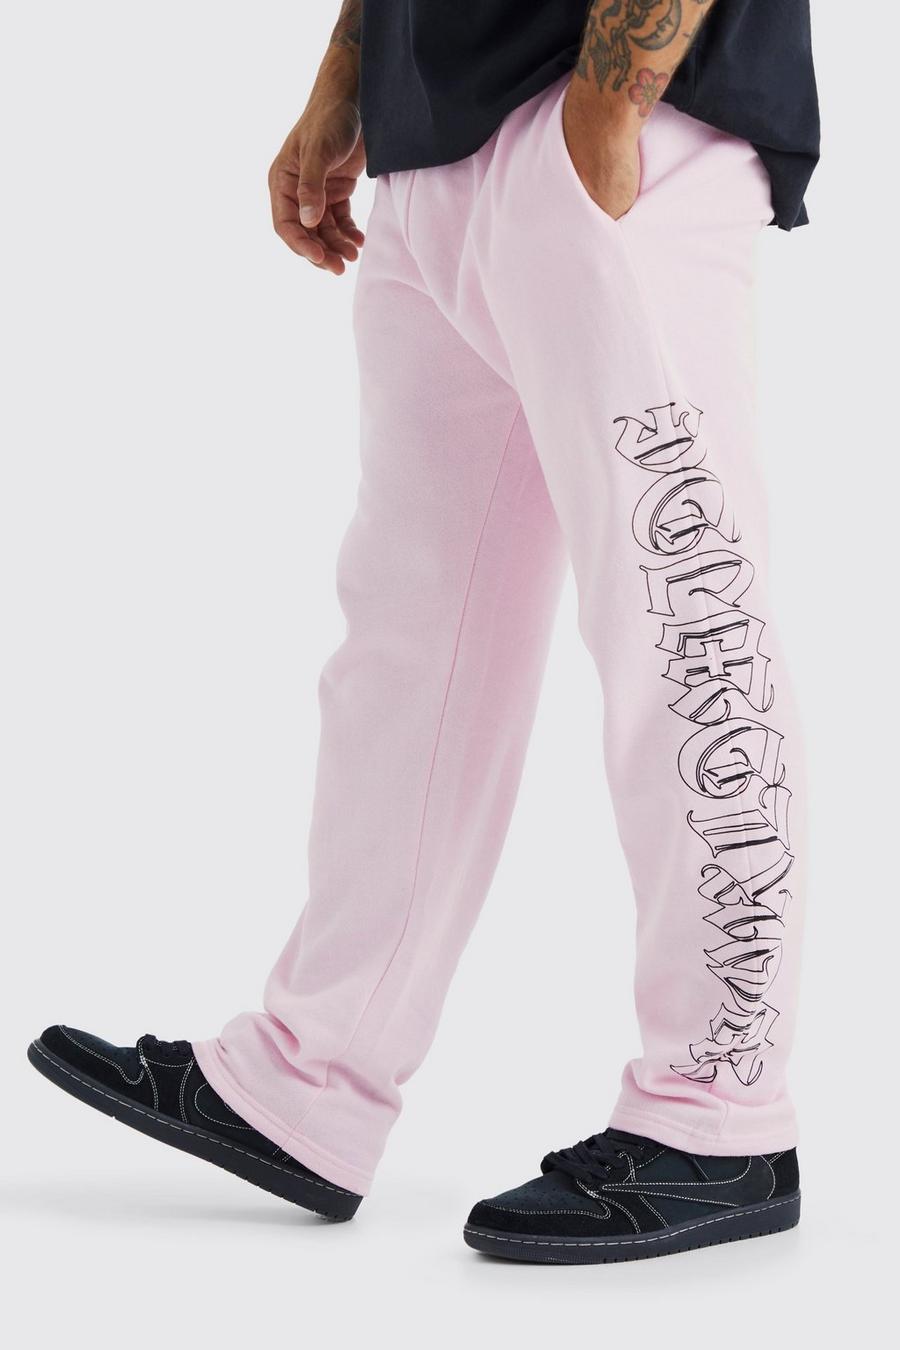 Pantaloni tuta dritti Worldwide, Pink rosa